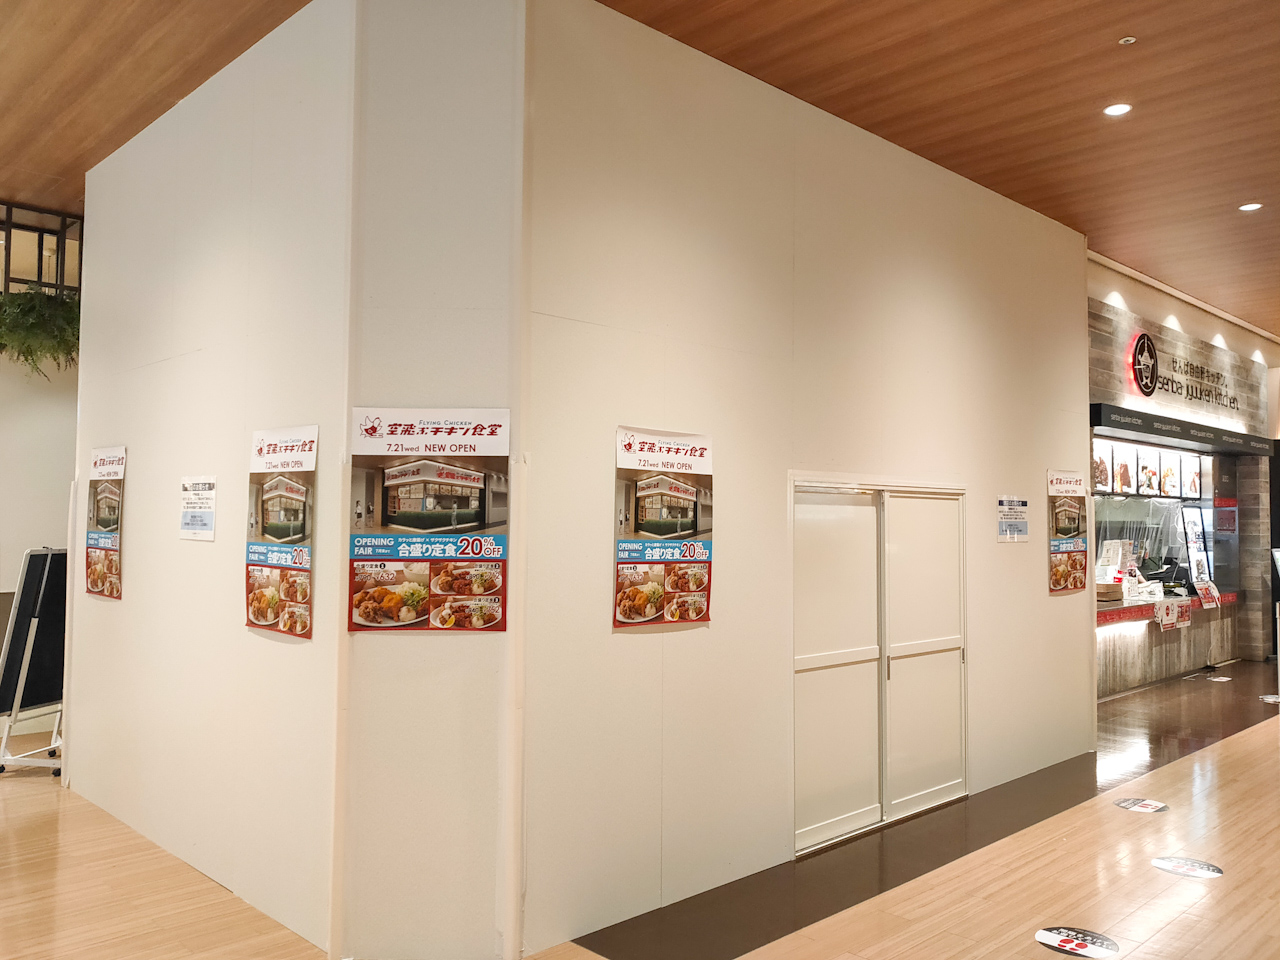 【2021年7月21日(水)開店】唐揚げ・ヤンニョムチキンのお店「空飛ぶチキン食堂」がコクーン2・3階コクーンキッチン内にオープン